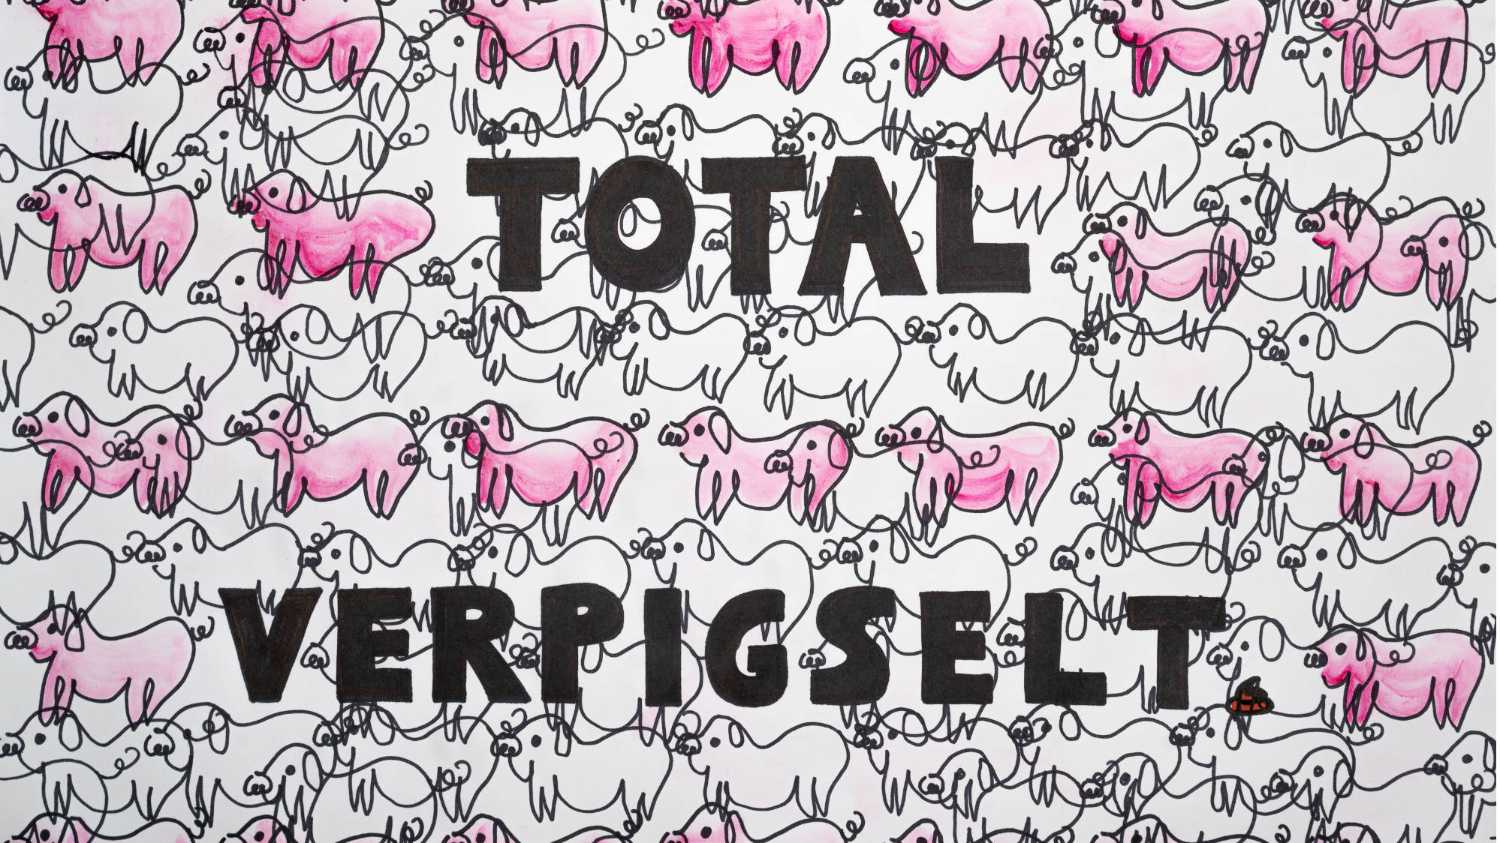 Bild einer Postkarte von Sahnewörtchen.de mit dem Titel: Total verpigselt. Auf der Karte sind zahllose Schweine abgebildet, die verschwommen aussehen.